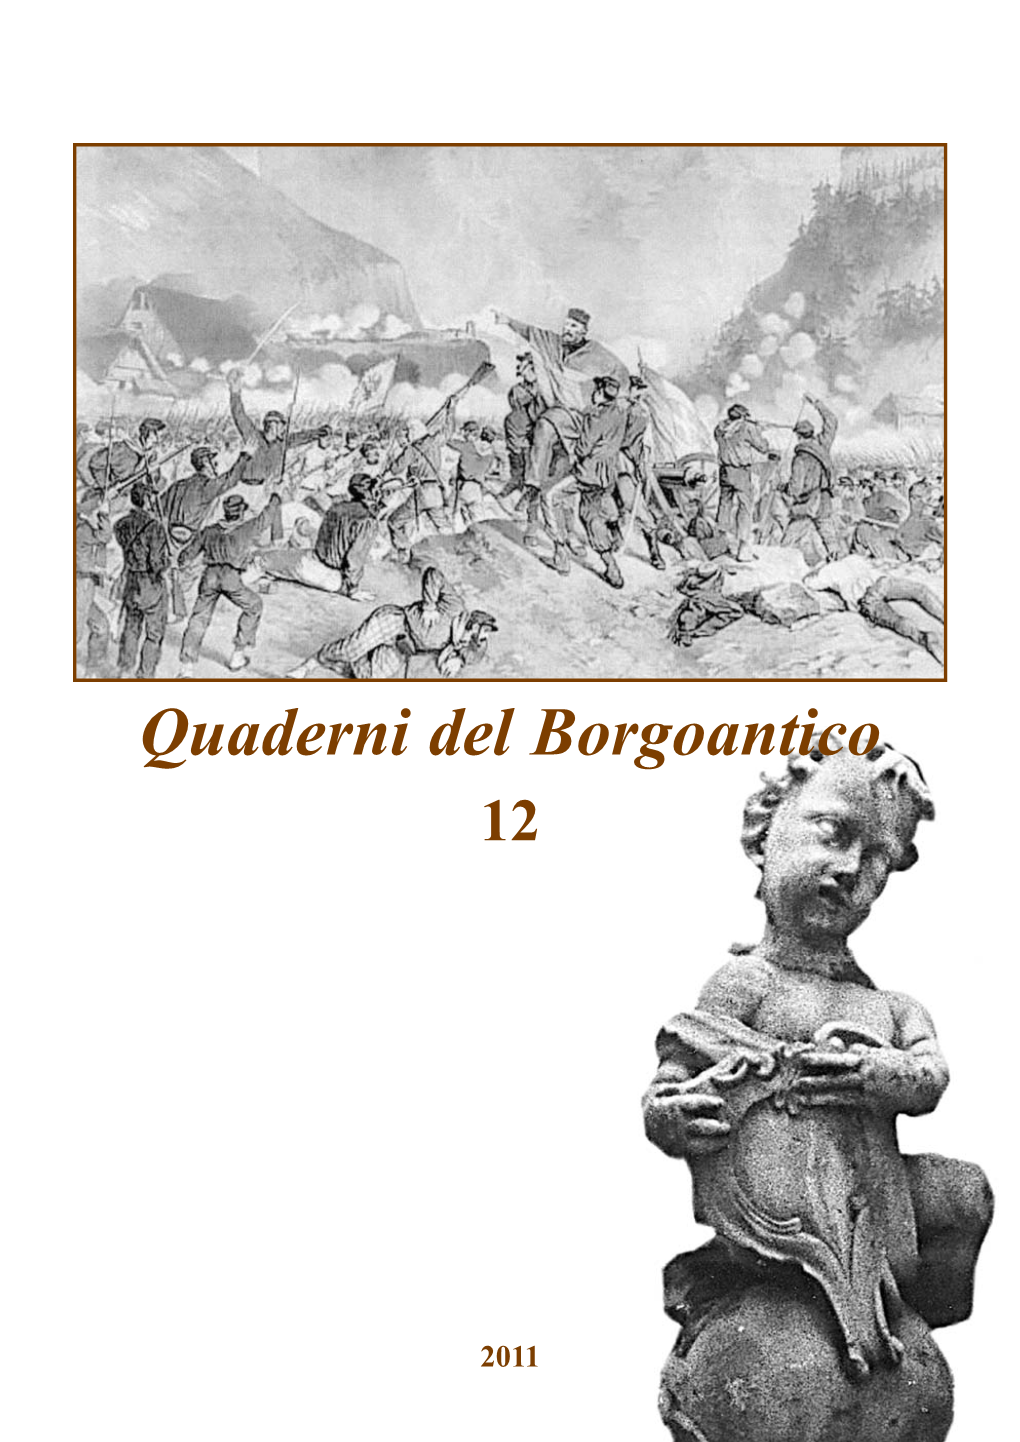 Quaderni Del Borgoantico-12 Alla Scoperta Dell’Identità Storica Di Villa Lagarina